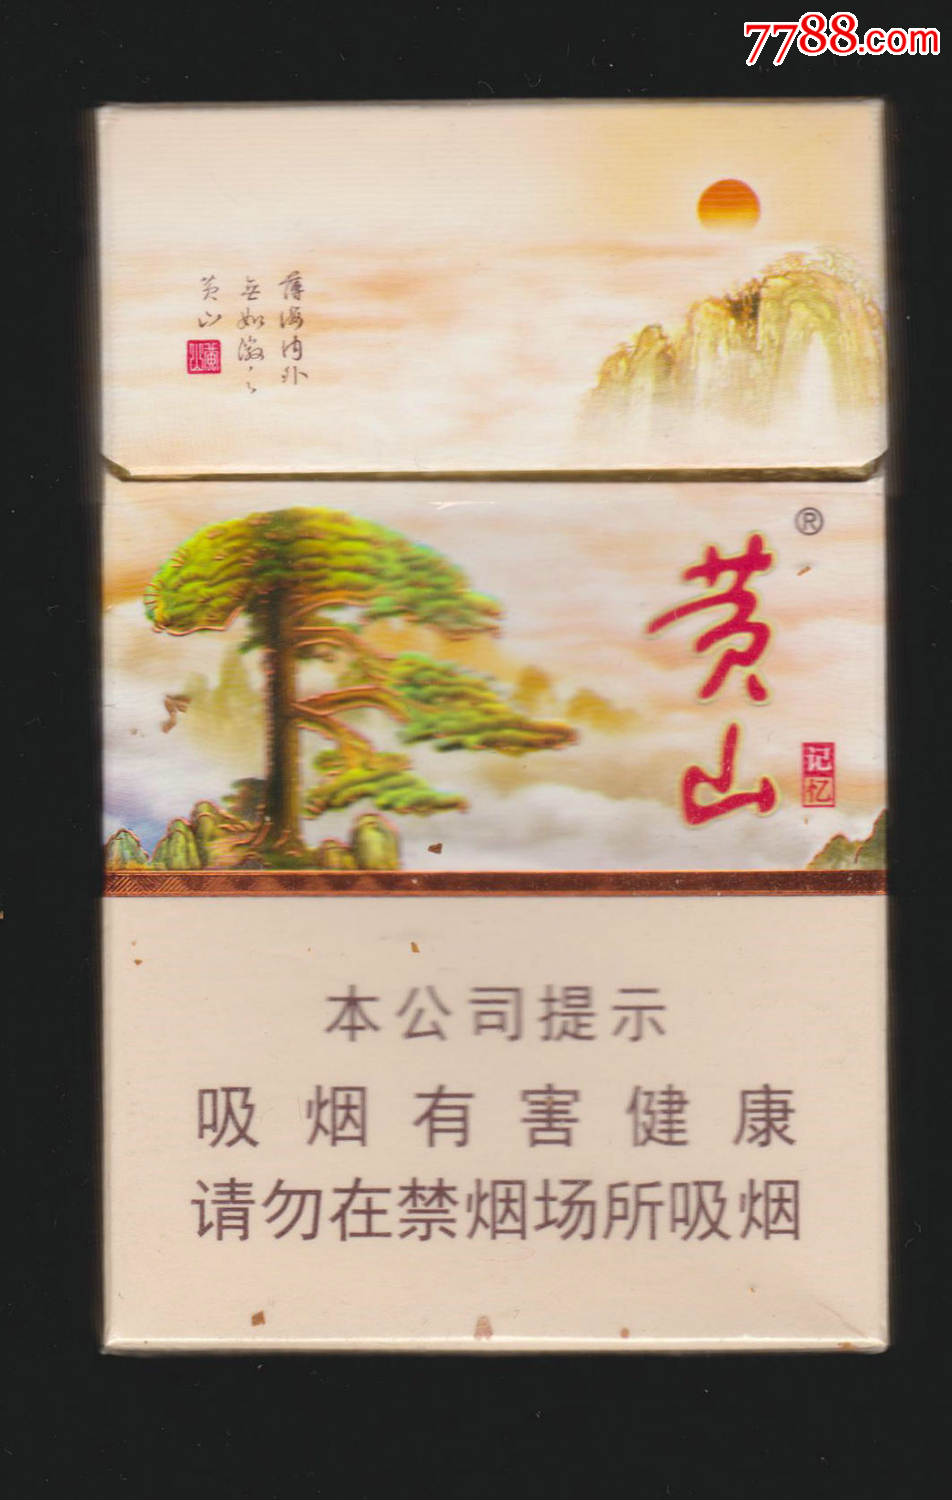 黄山(新版硬记忆)1(123259焦油10mg)-安徽中烟